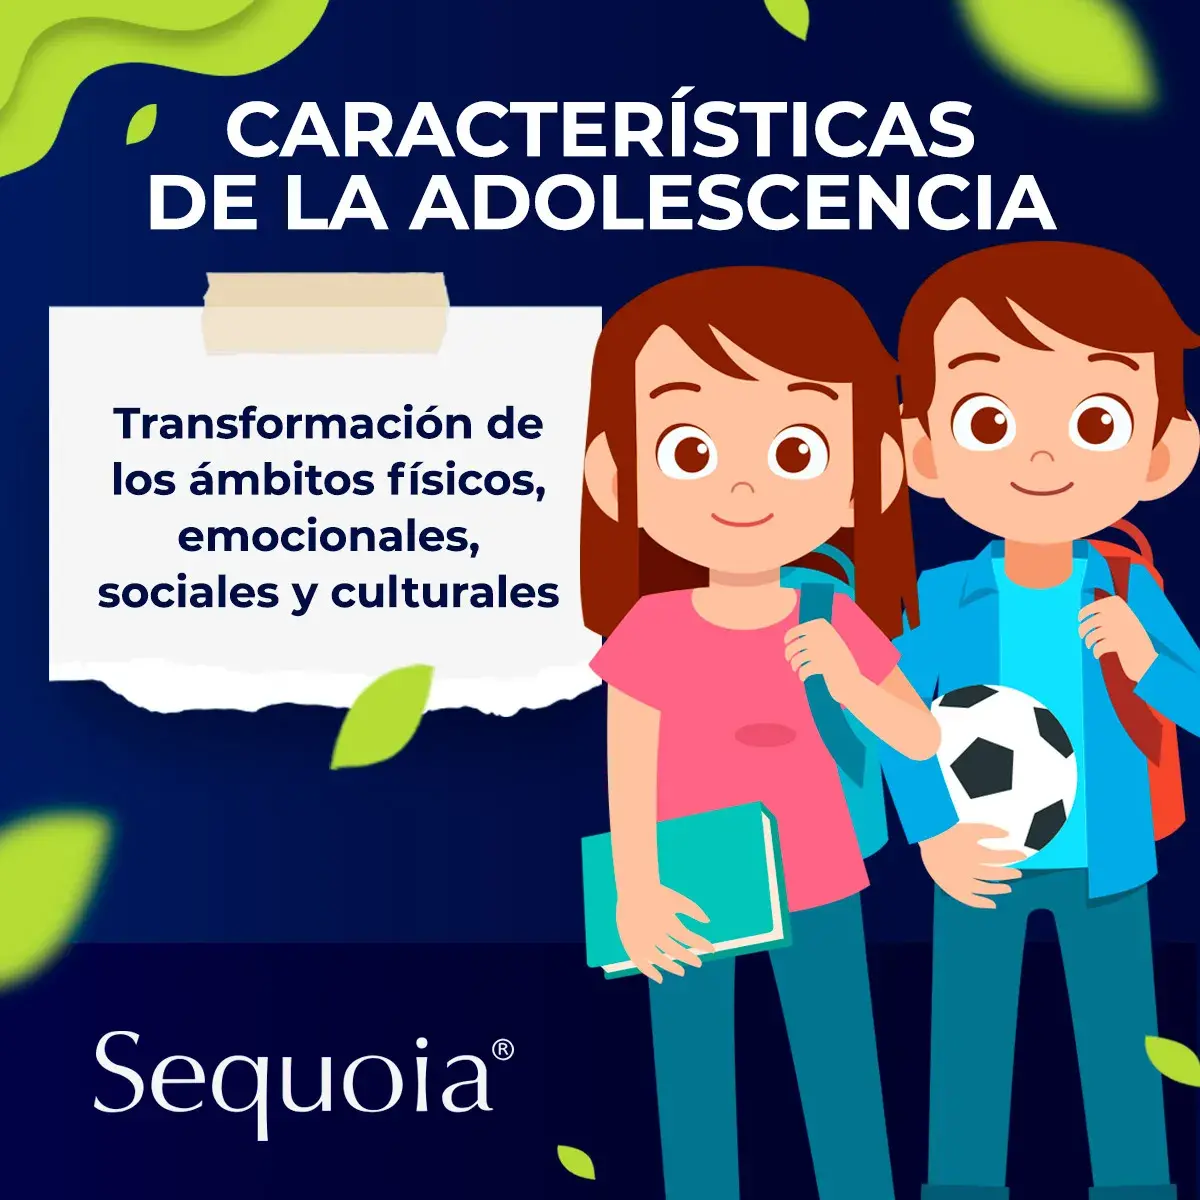 Las características de la adolescencia son físicas, emocionales, sociales y culturales.